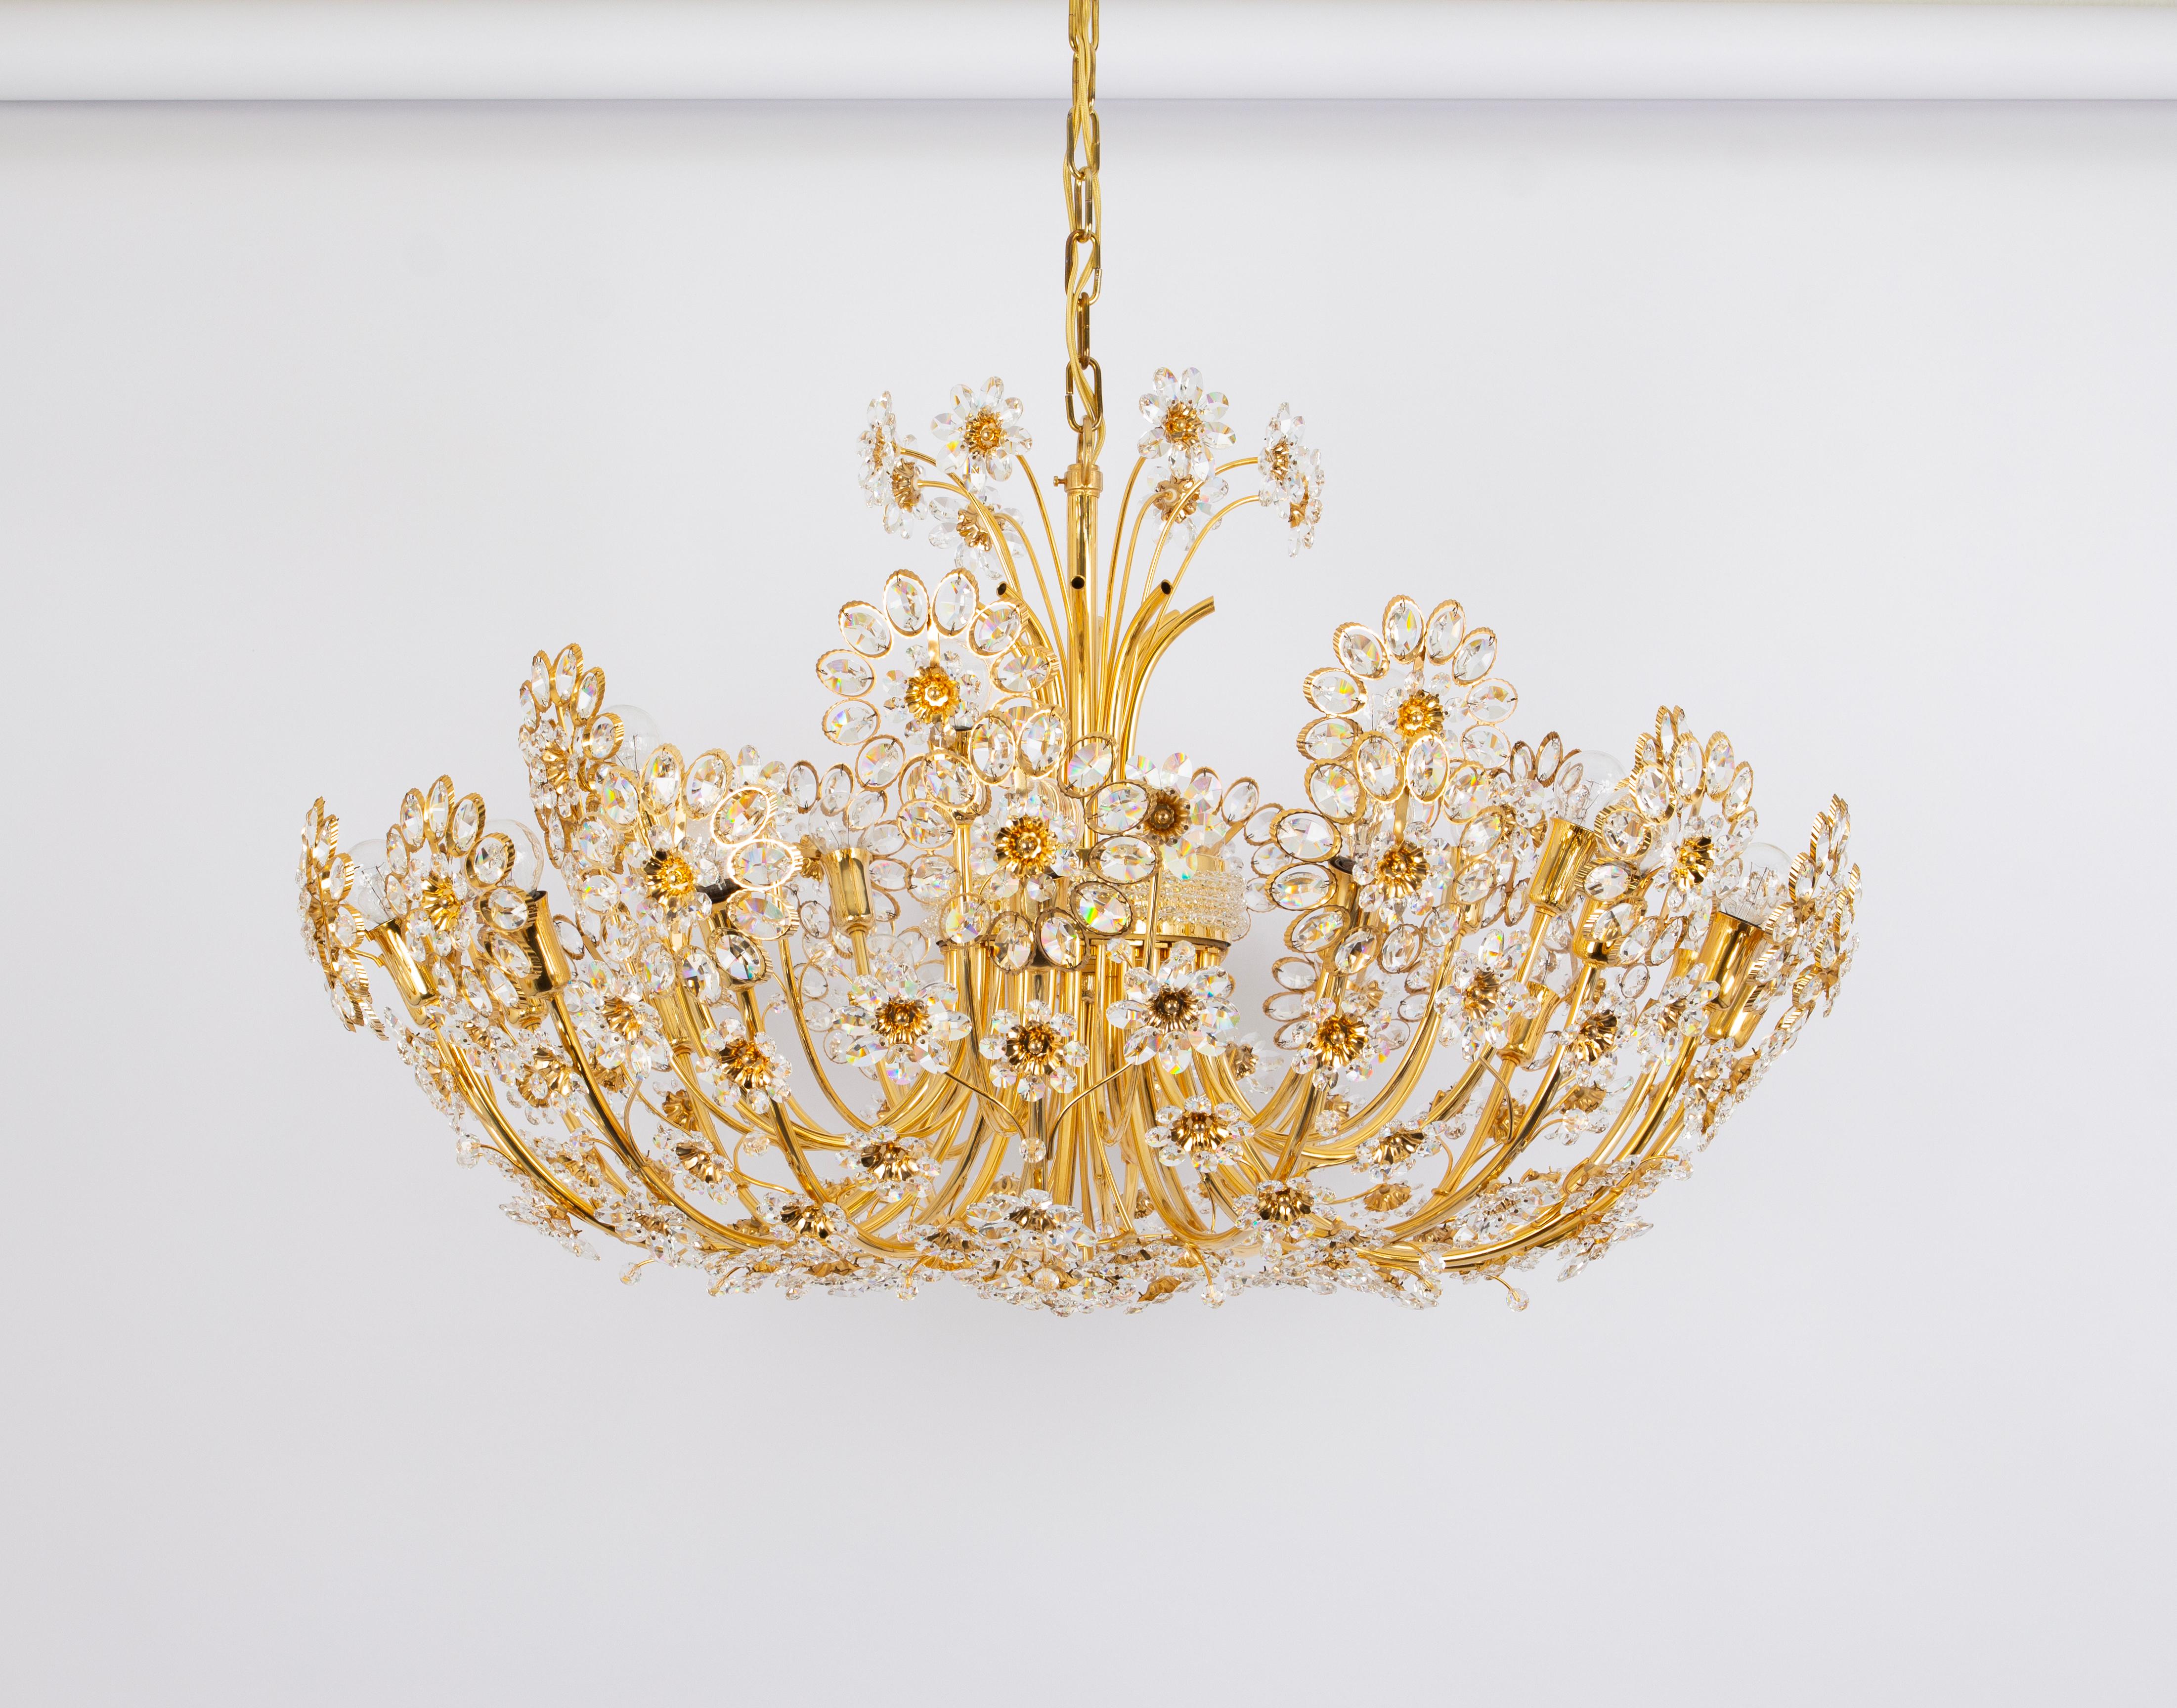 Délicat lustre floral rond en laiton doré, en métal et en verre de cristal, fabriqué par Palwa, Allemagne, vers 1970-1979, documenté dans le catalogue de vente de Palwa. Ce magnifique lustre est composé de nombreux cristaux facettés (Swarovski),